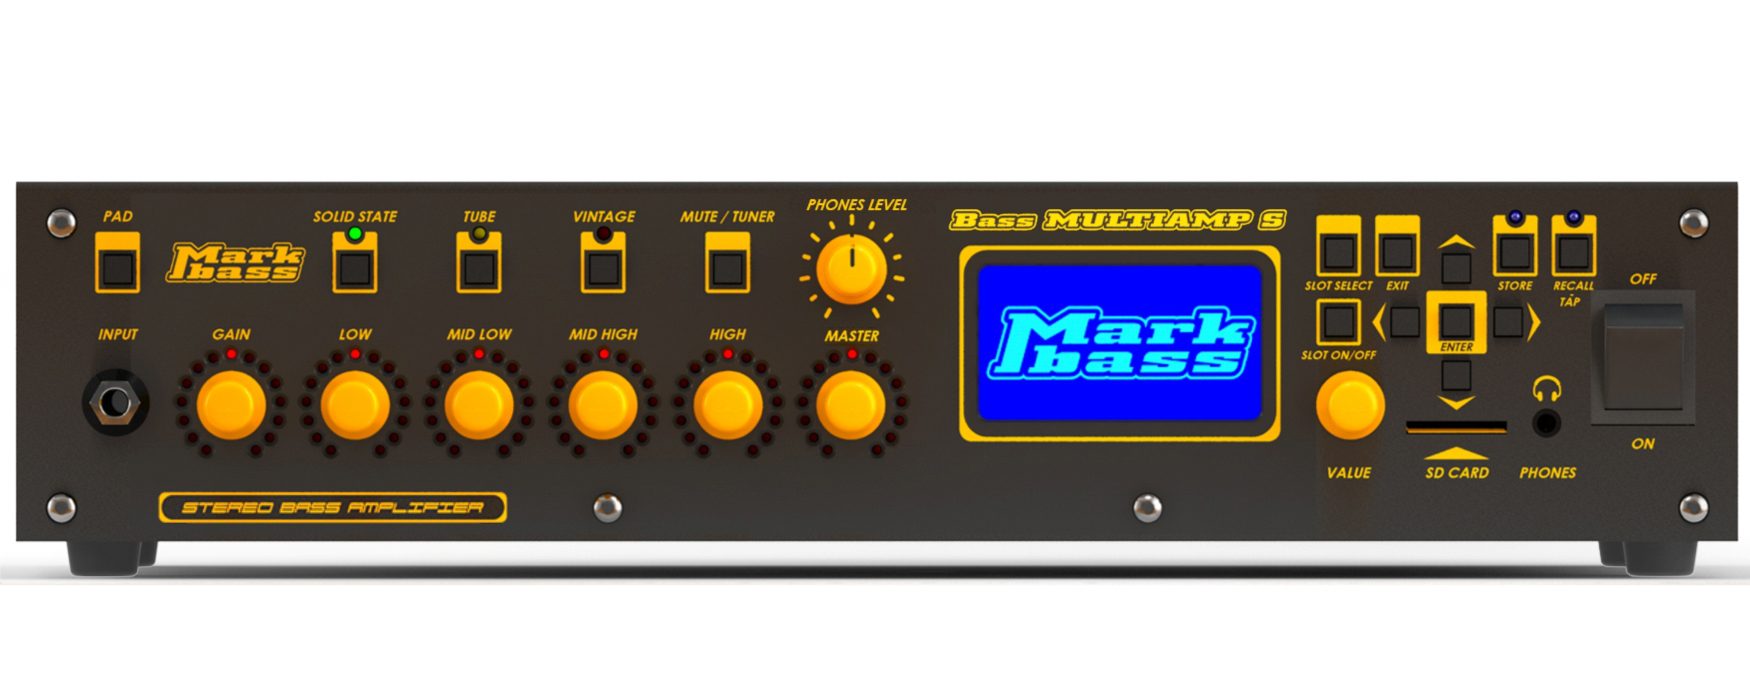 Bass Multiamp S – Markbass